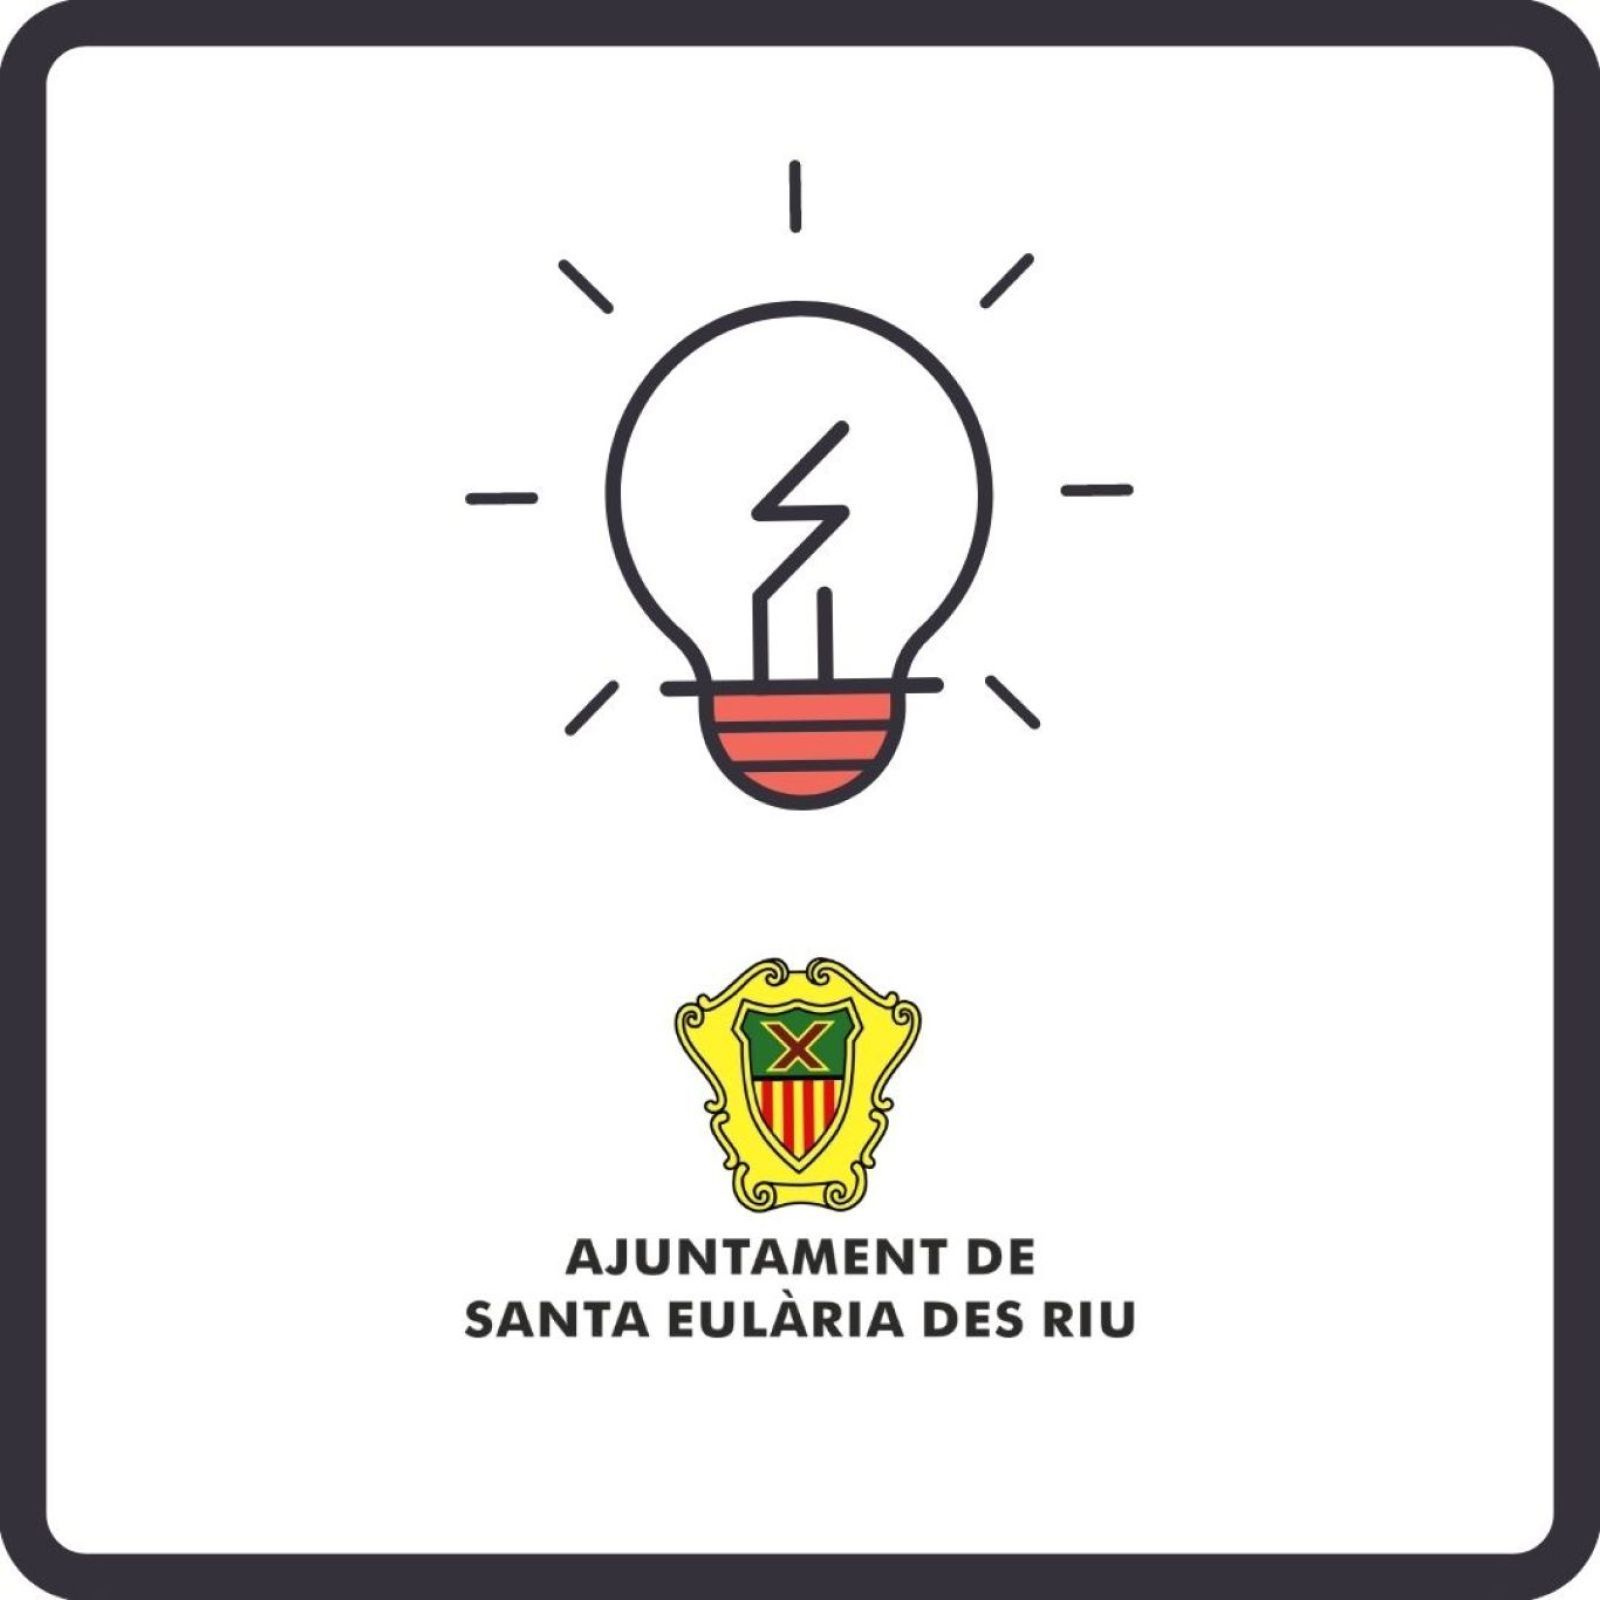 Corte temporal del suministro de energía eléctrica en diferentes zonas de Santa Eulària des Riu el día 12 de mayo